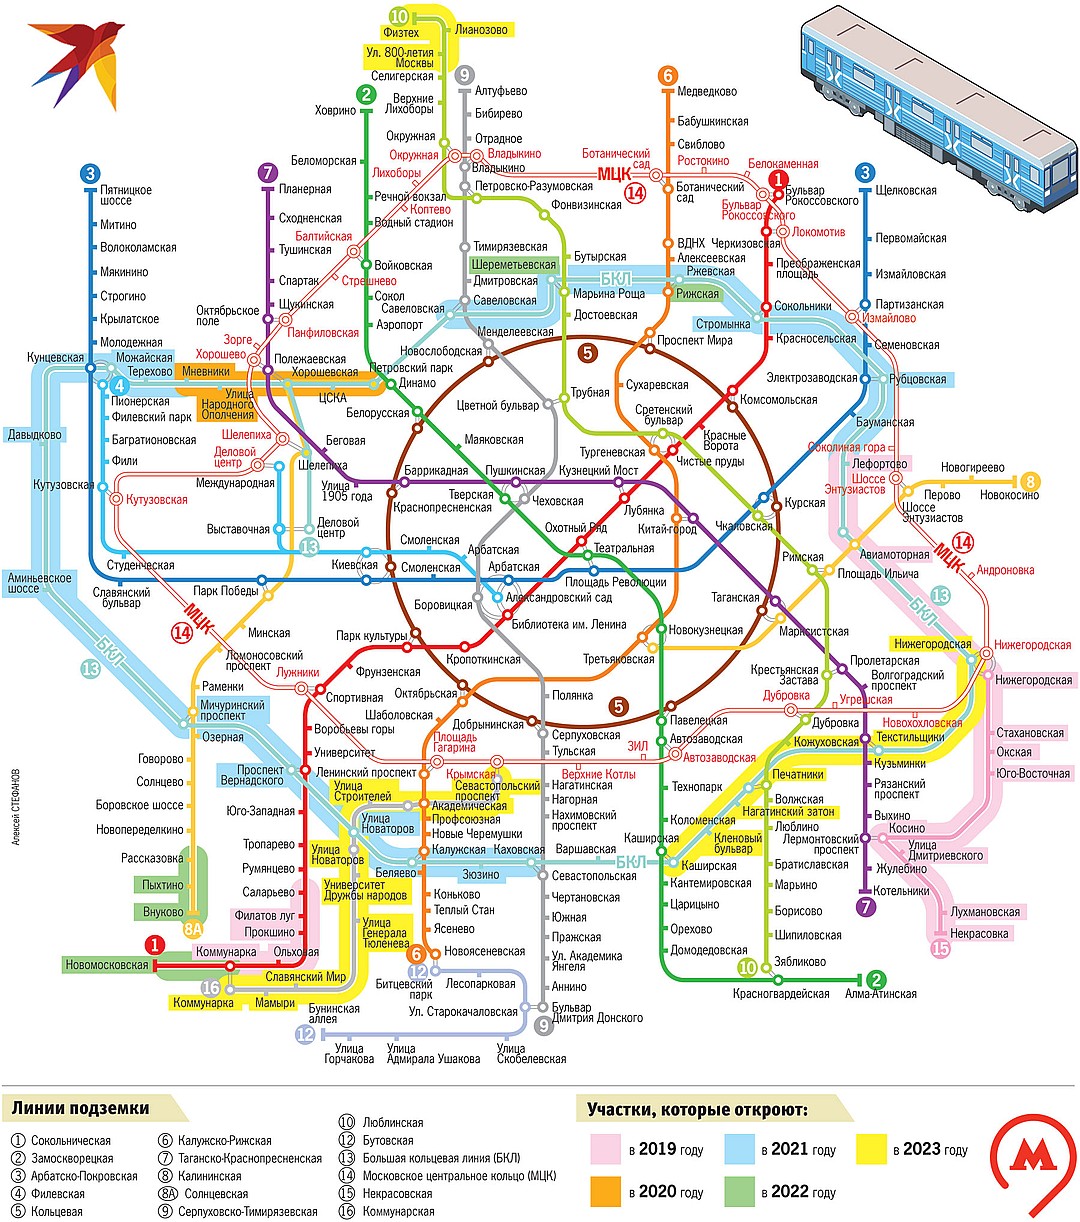 Карта метро москвы на 2023 год